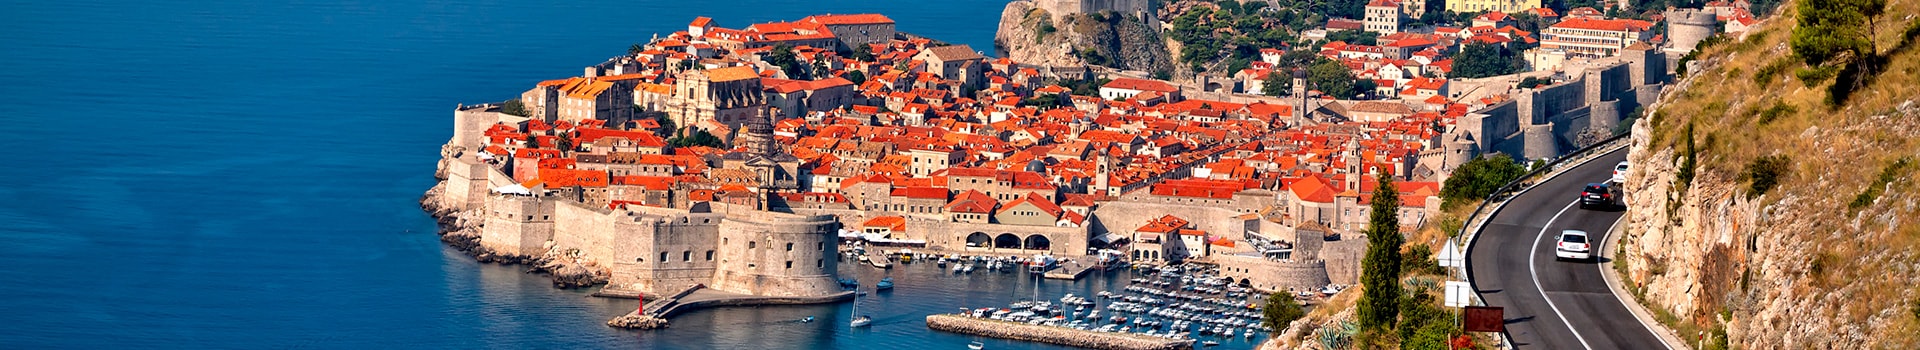 Mallorca - Dubrovnik